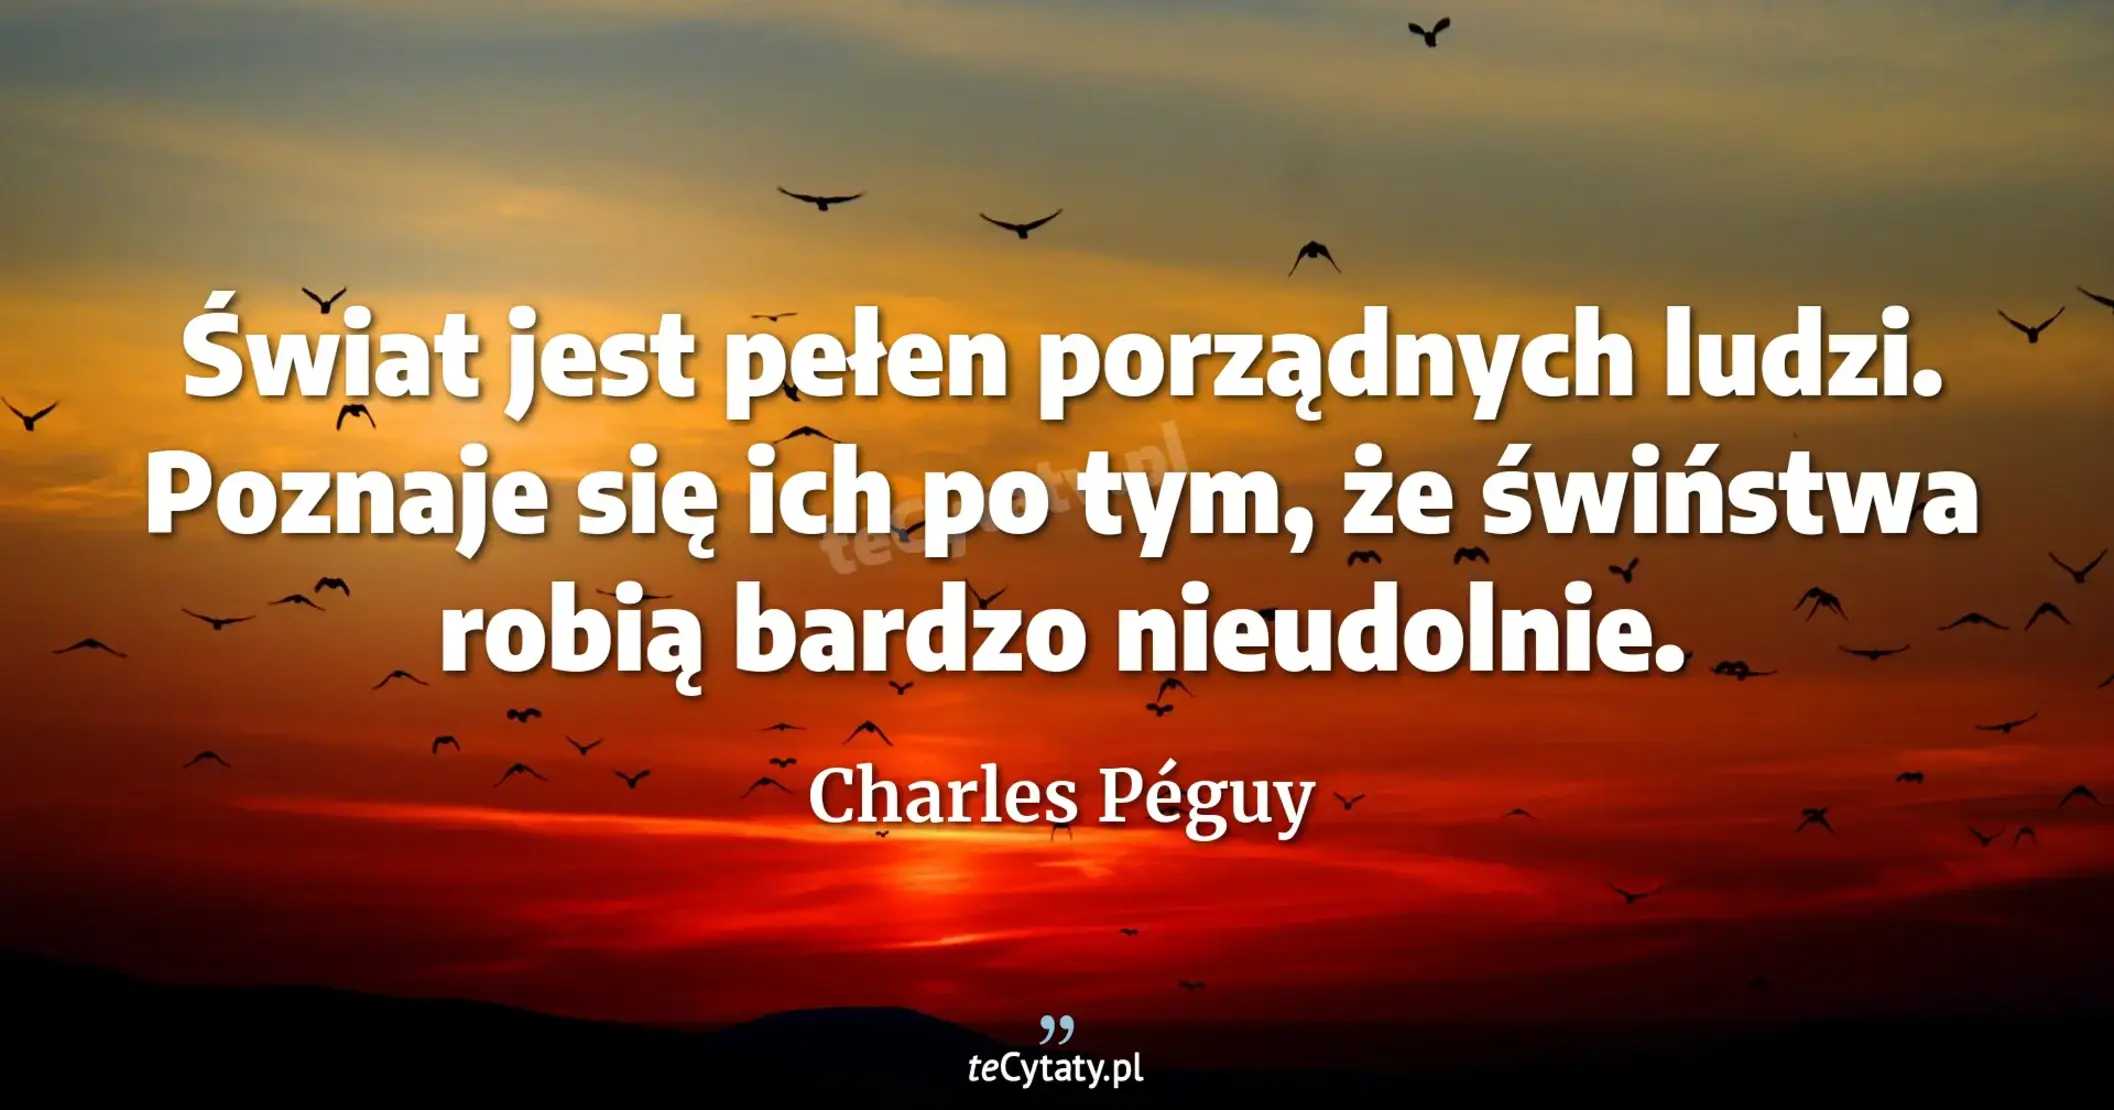 Świat jest pełen porządnych ludzi. Poznaje się ich po tym, że świństwa robią bardzo nieudolnie. - Charles Péguy